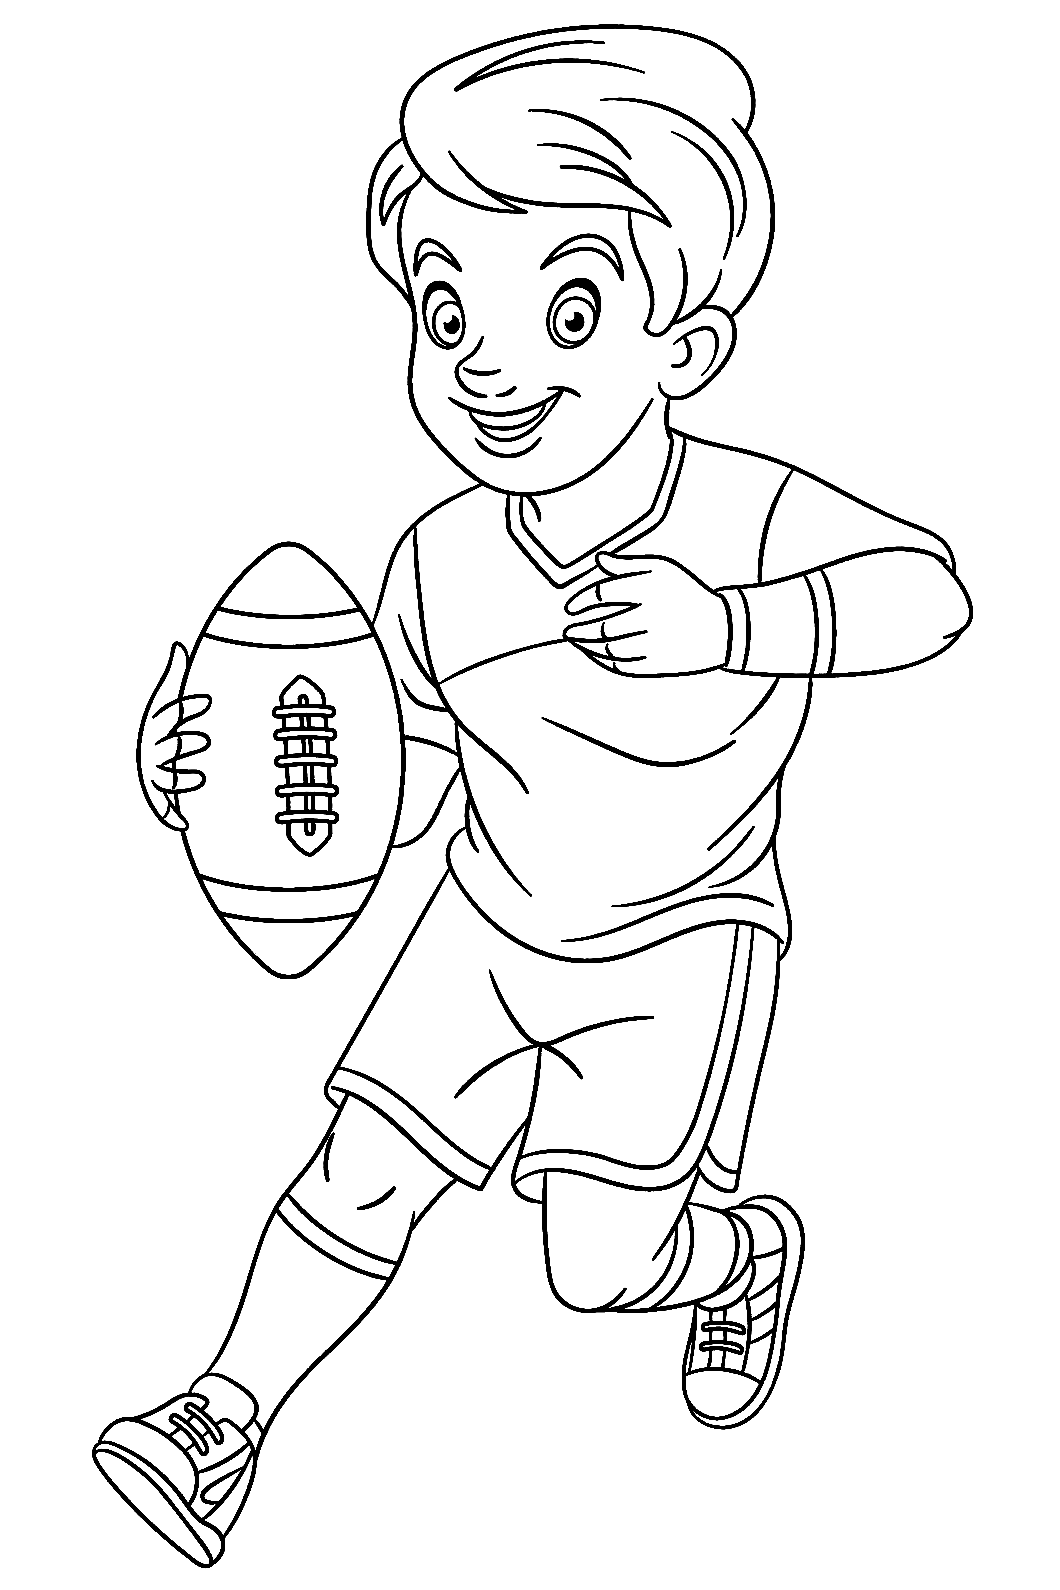 Garçon jouant au rugby de Rugby